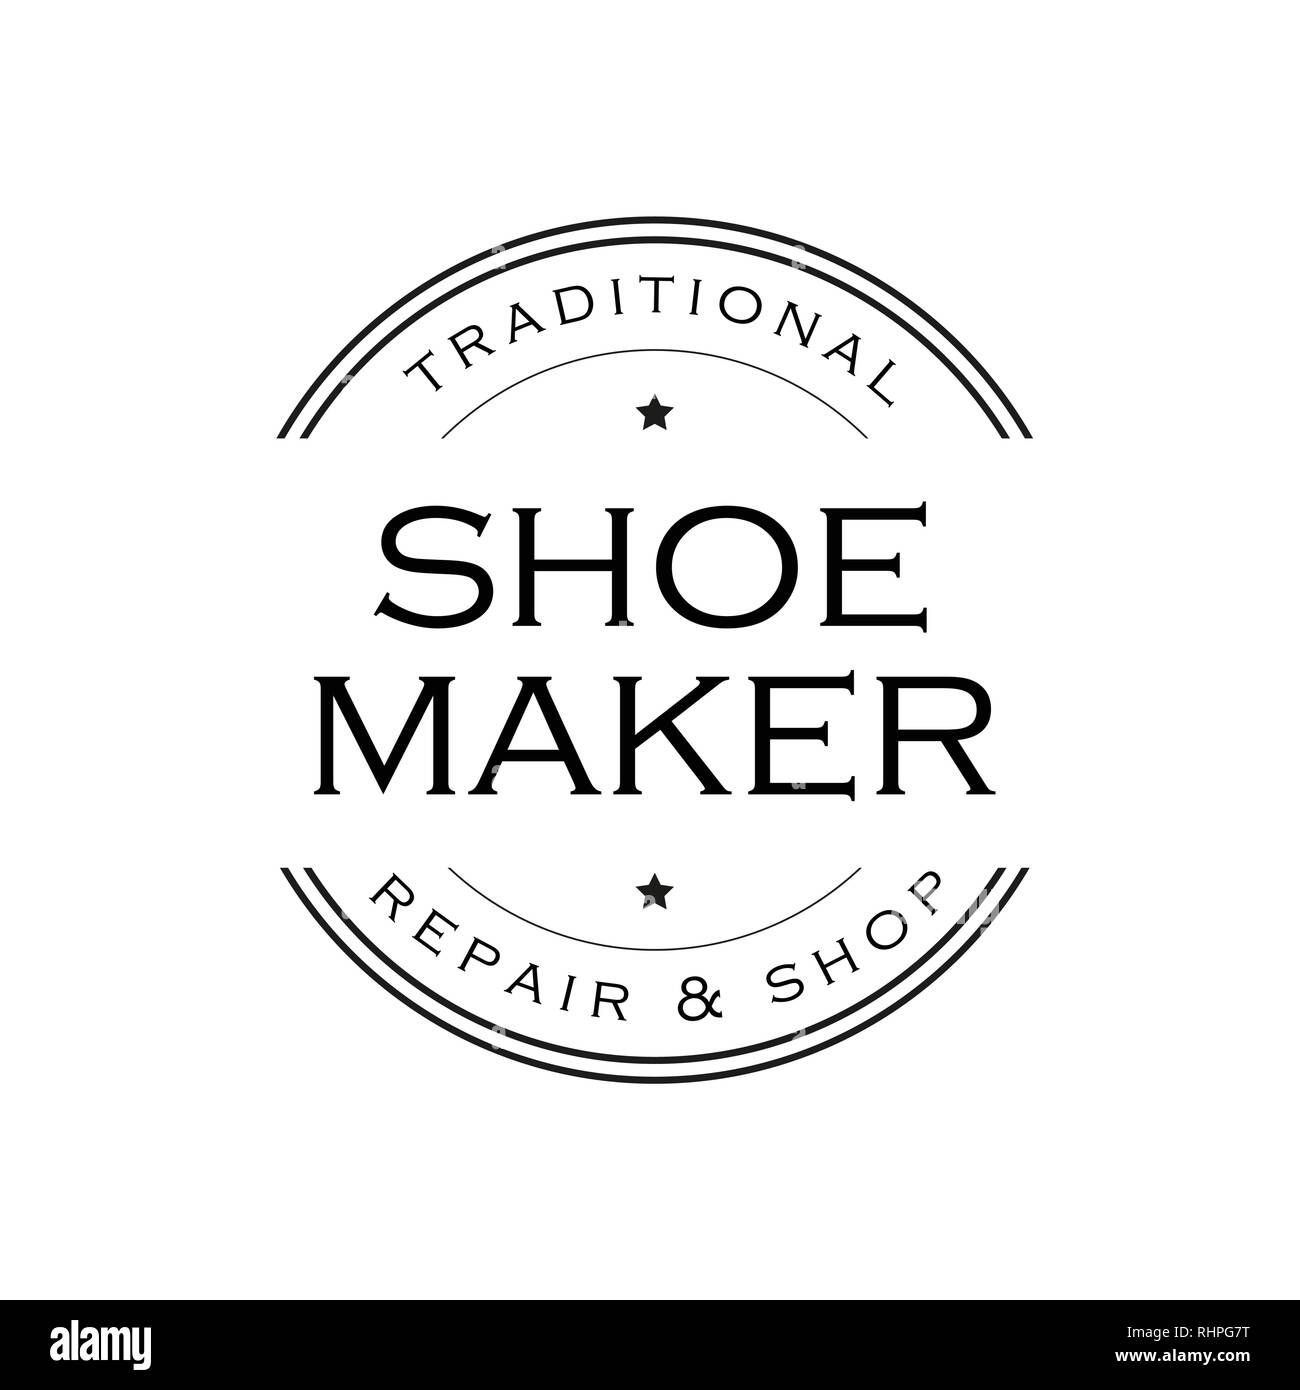 Shoe Maker vintage sign logo Stock Vector